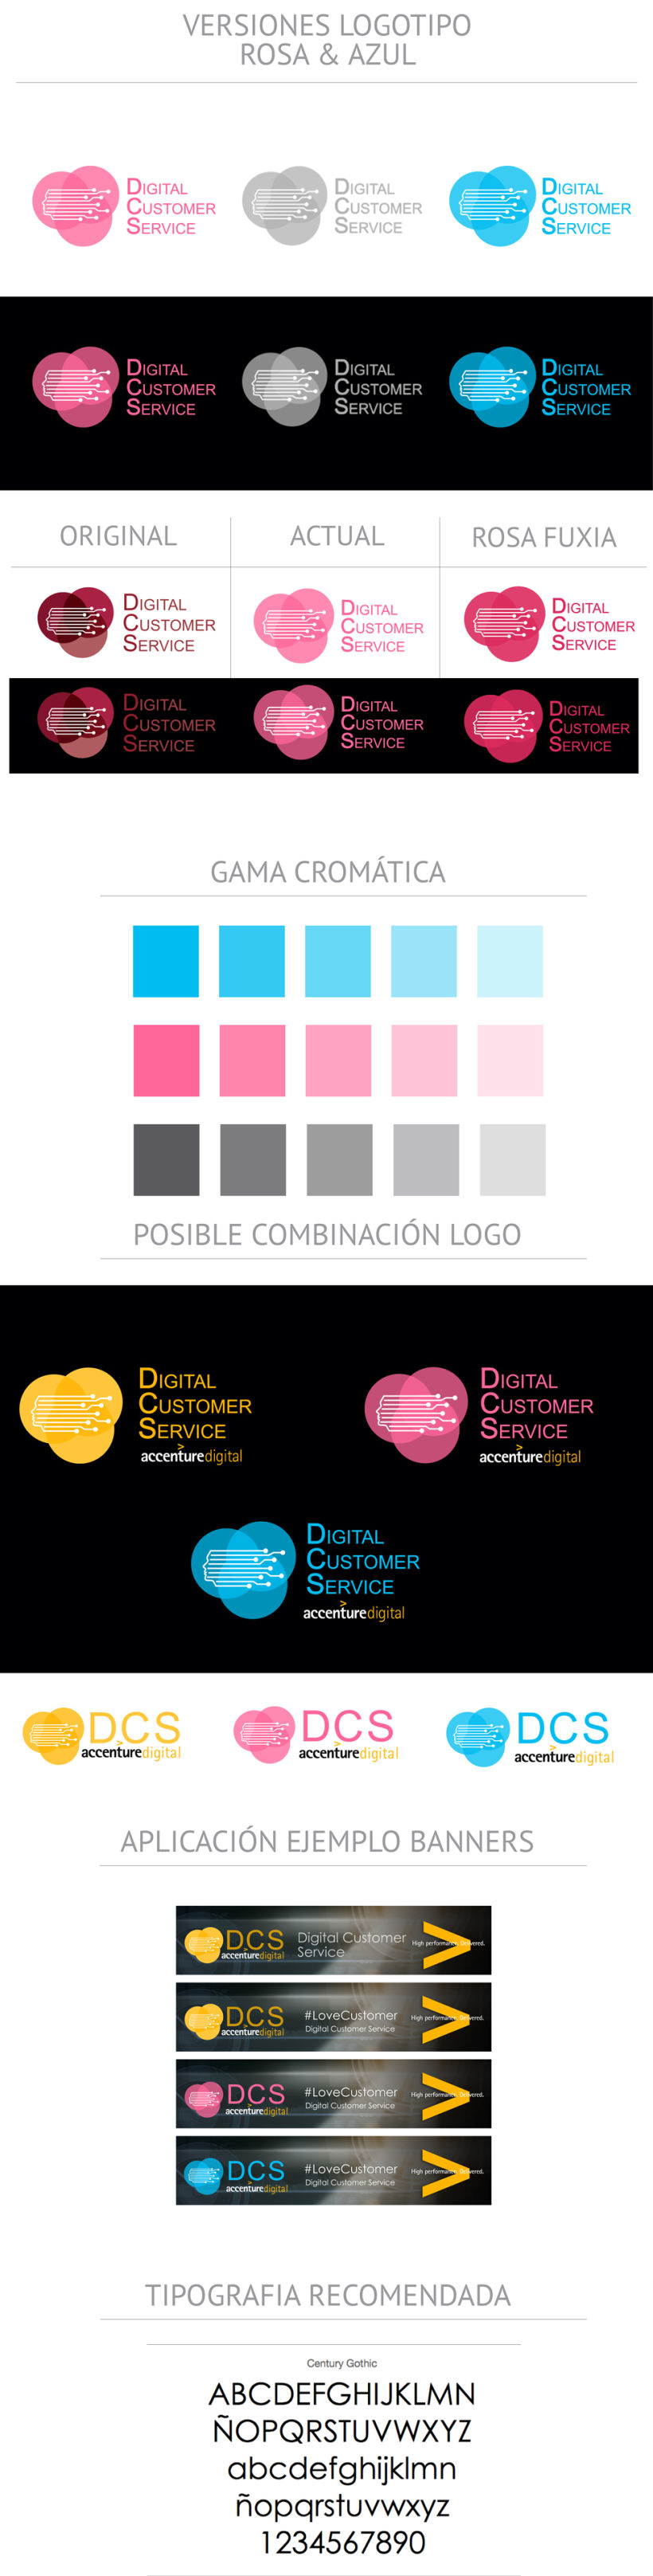 Diseño Imagen Accenture Digital -1